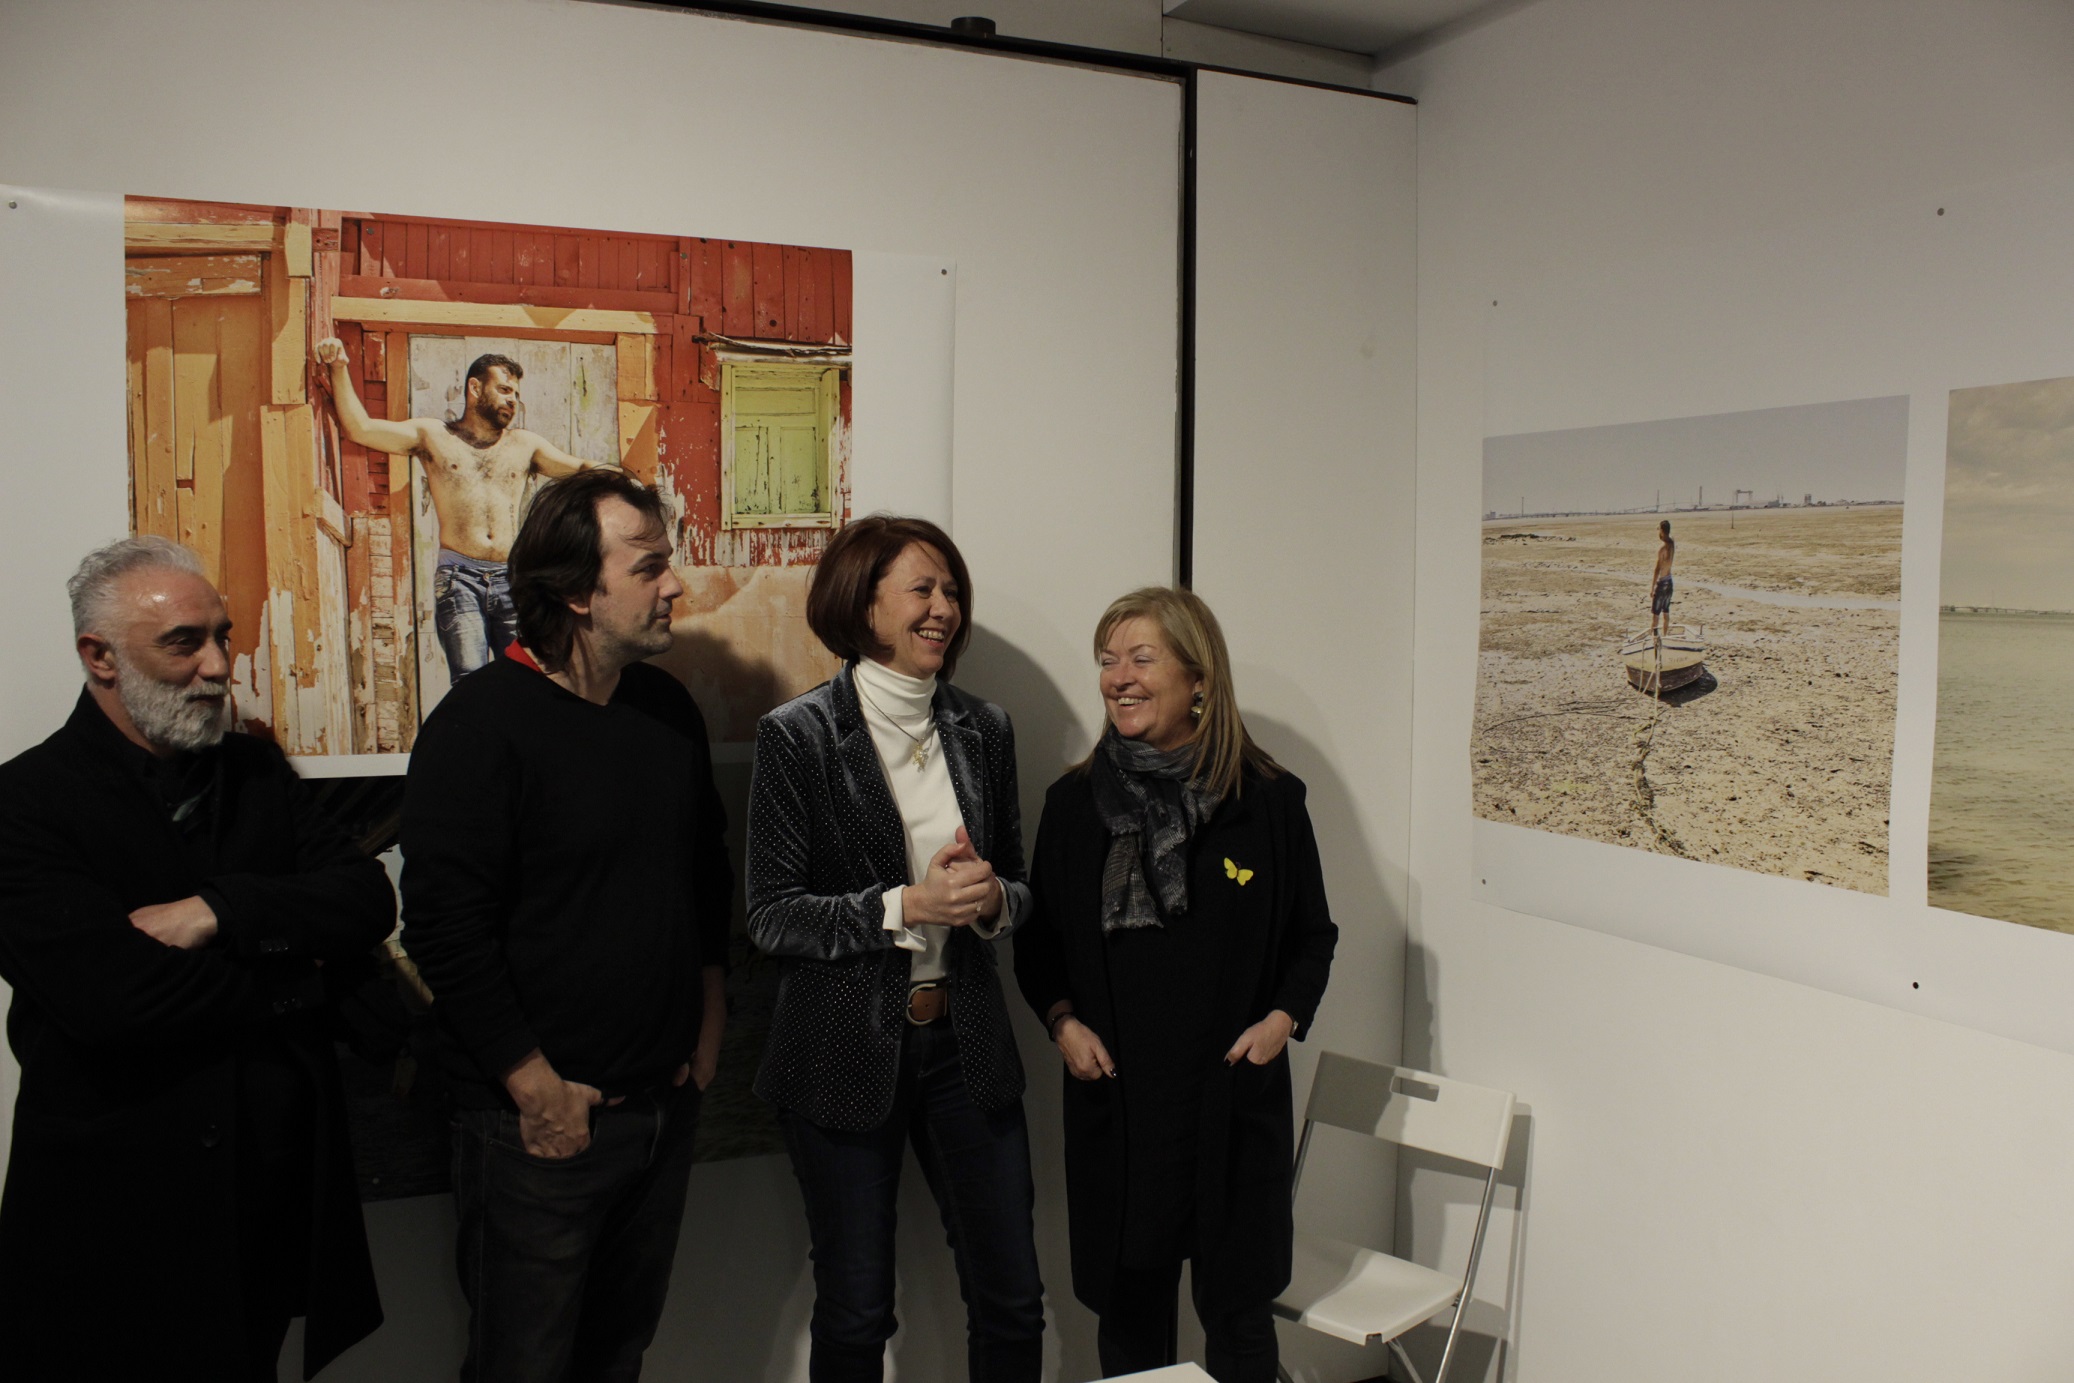 Inauguració de l’exposició Les imatges eco al Bòlit, el passat 25 de gener; d’esquerra a dreta, Pep Admetlla, Isaki Lacuesta, Marta Madrenas i Maria Àngels Ponsa.